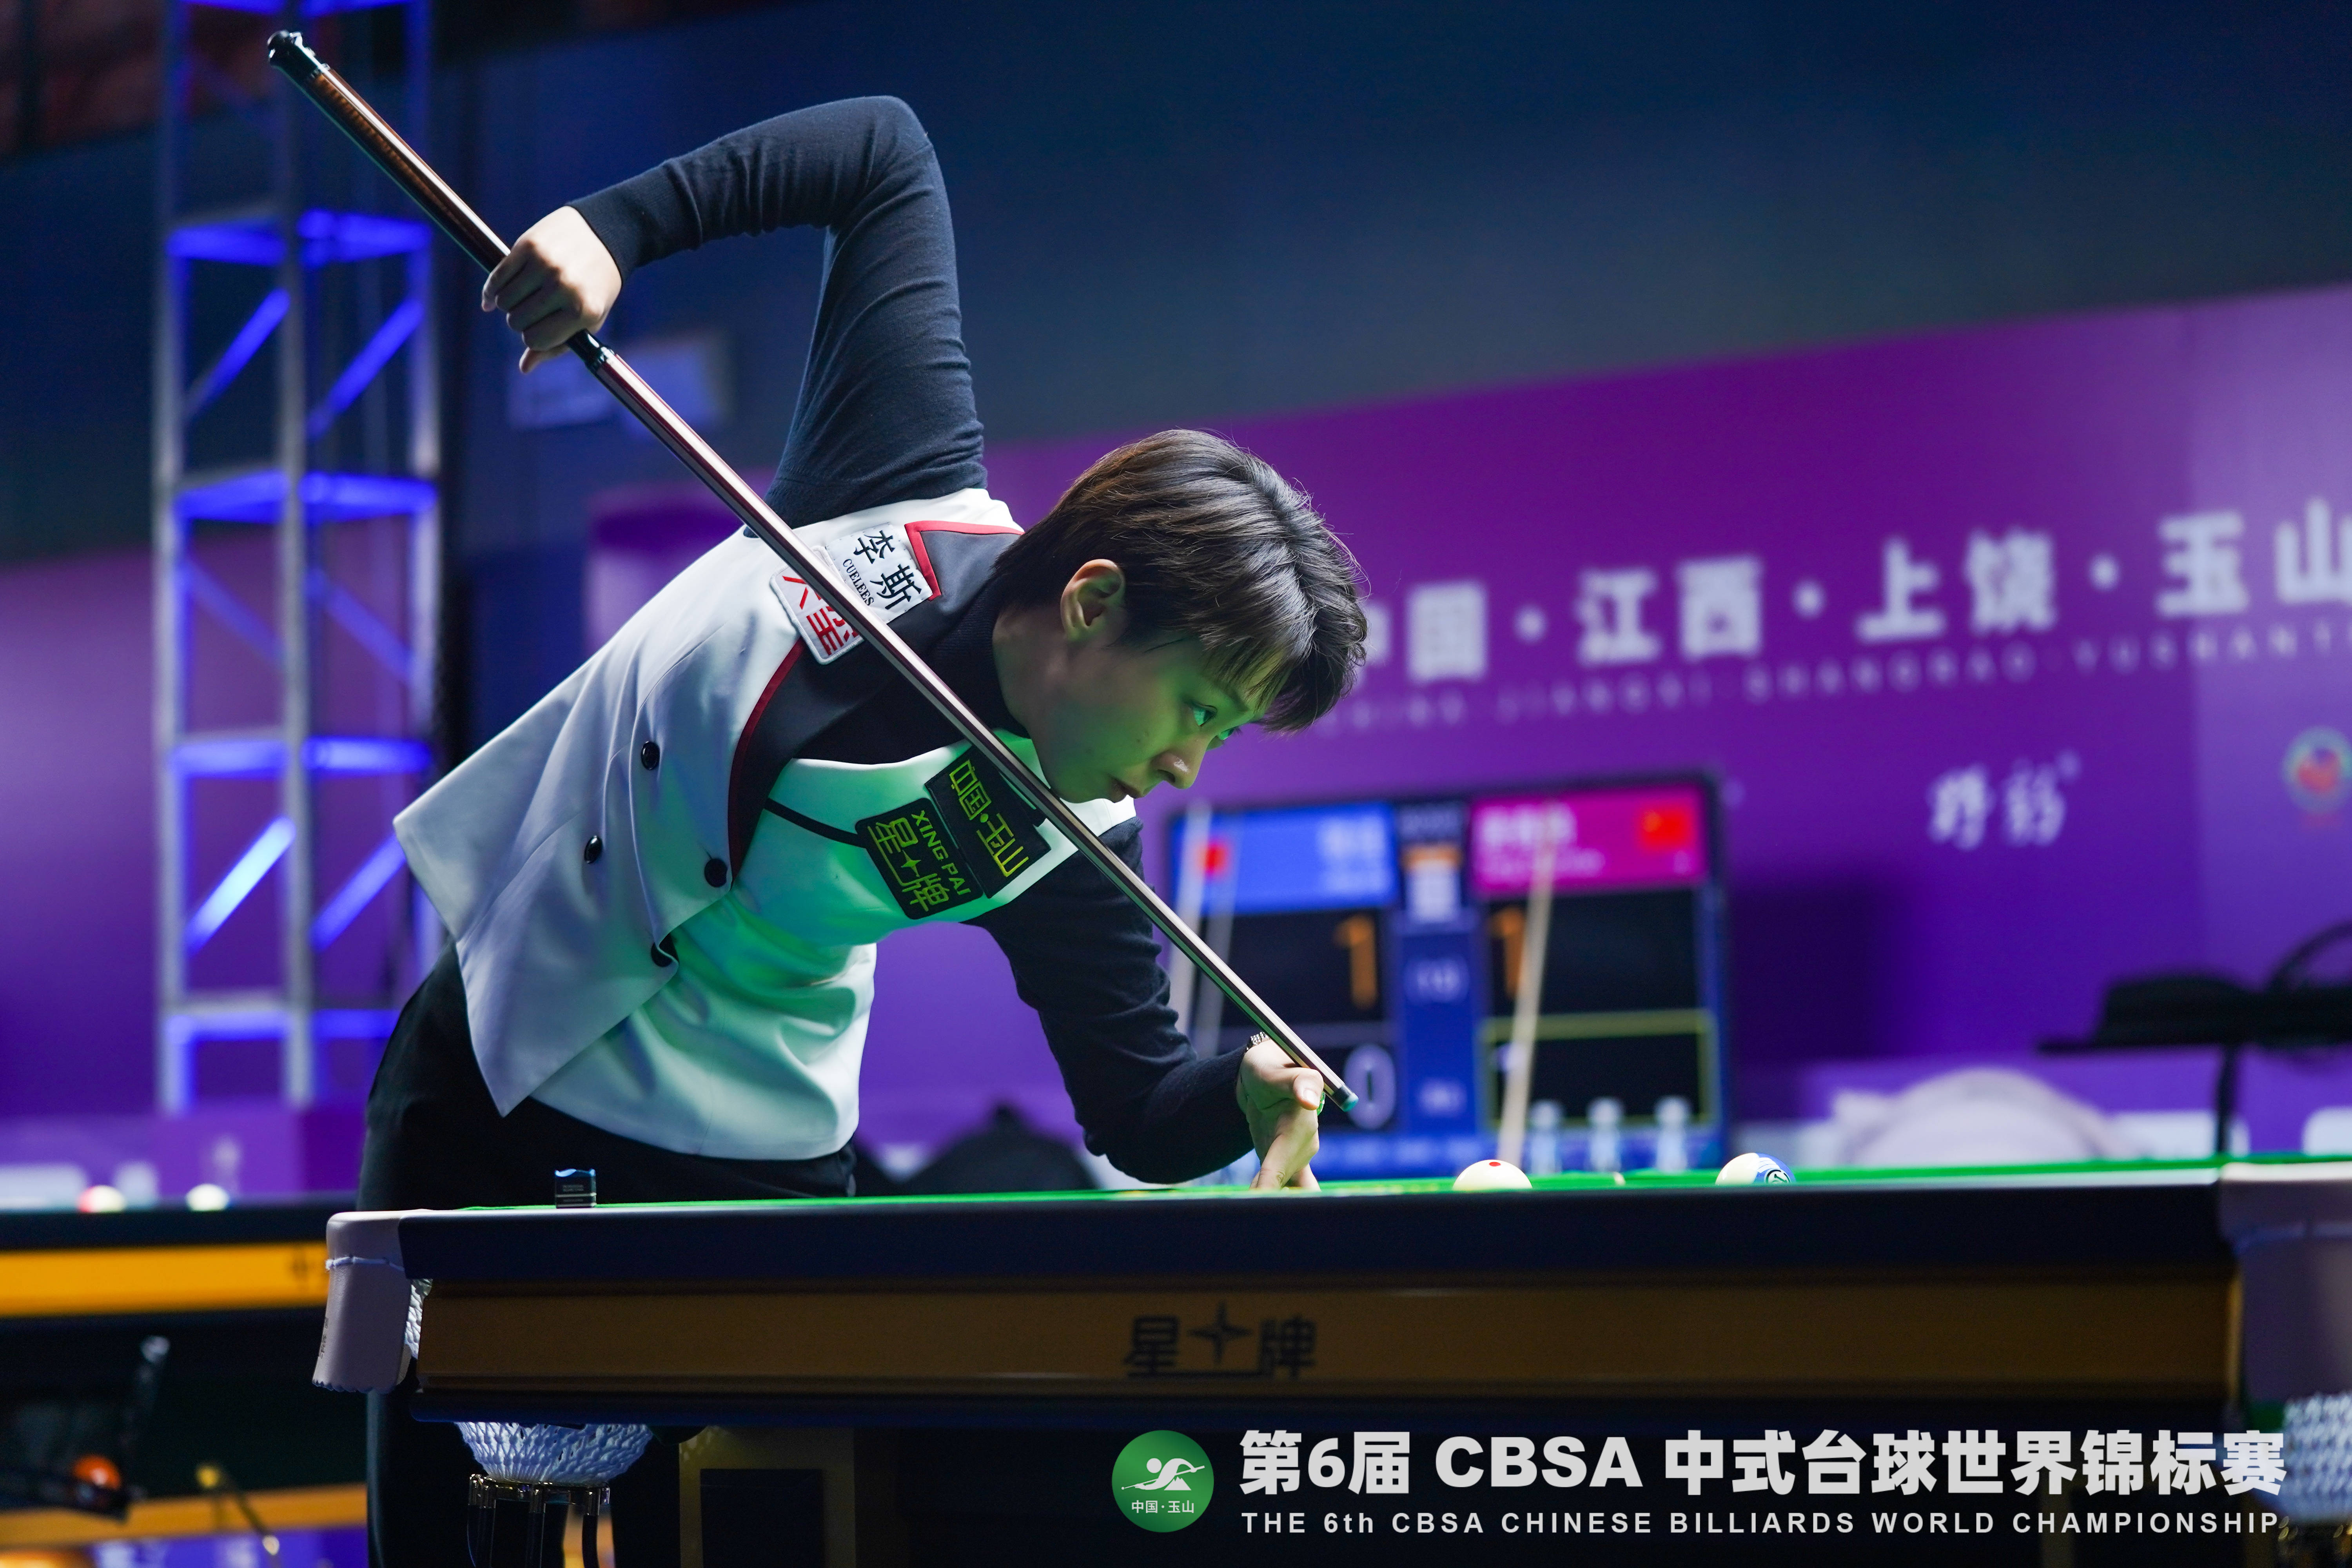 中式台球世锦赛:卫冕冠军郑宇伯,陈思明晋级第二阶段